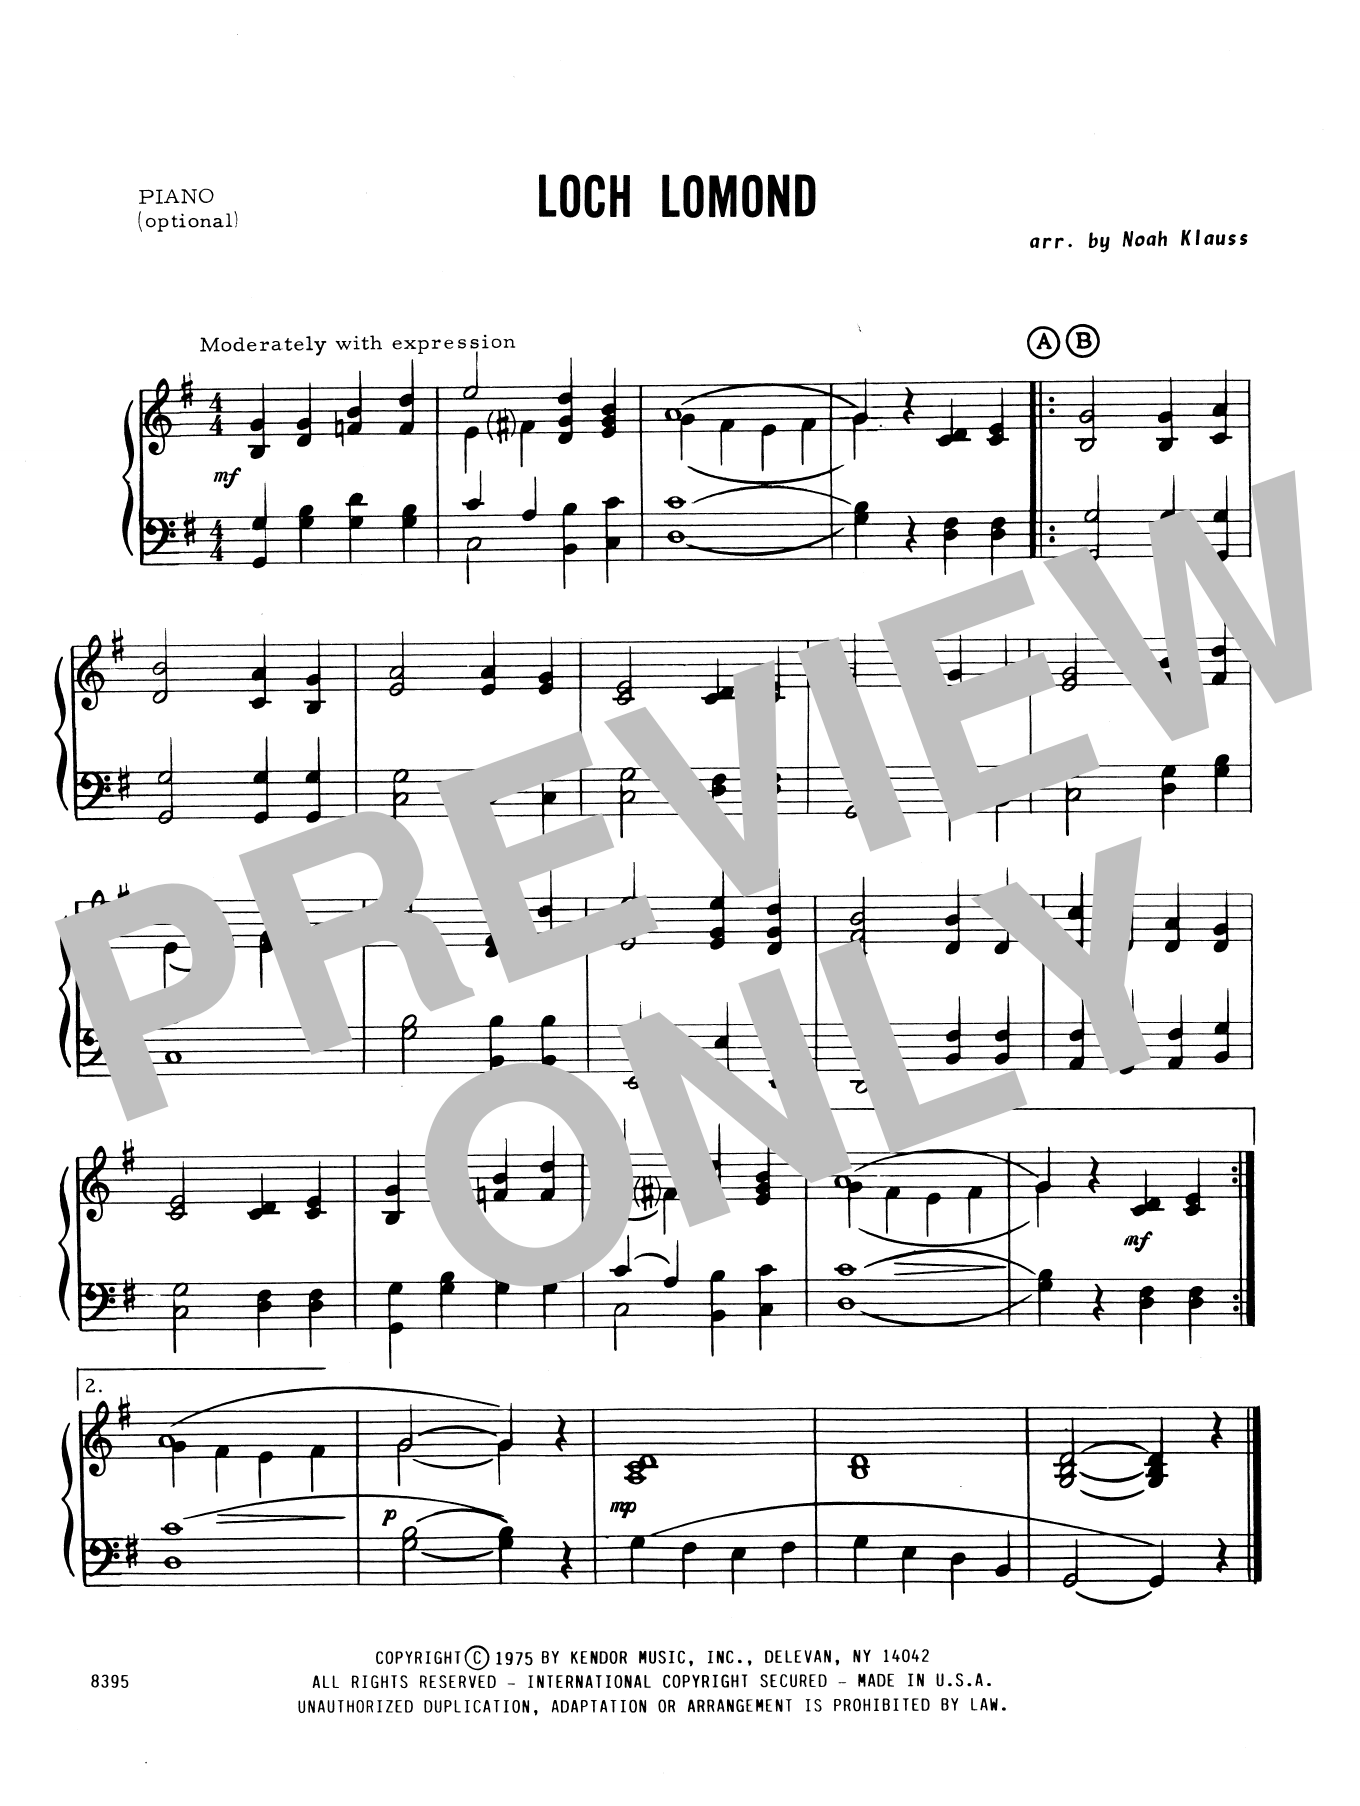 Loch Lomond - Piano Accompaniment (Orchestra) von Noah Klauss